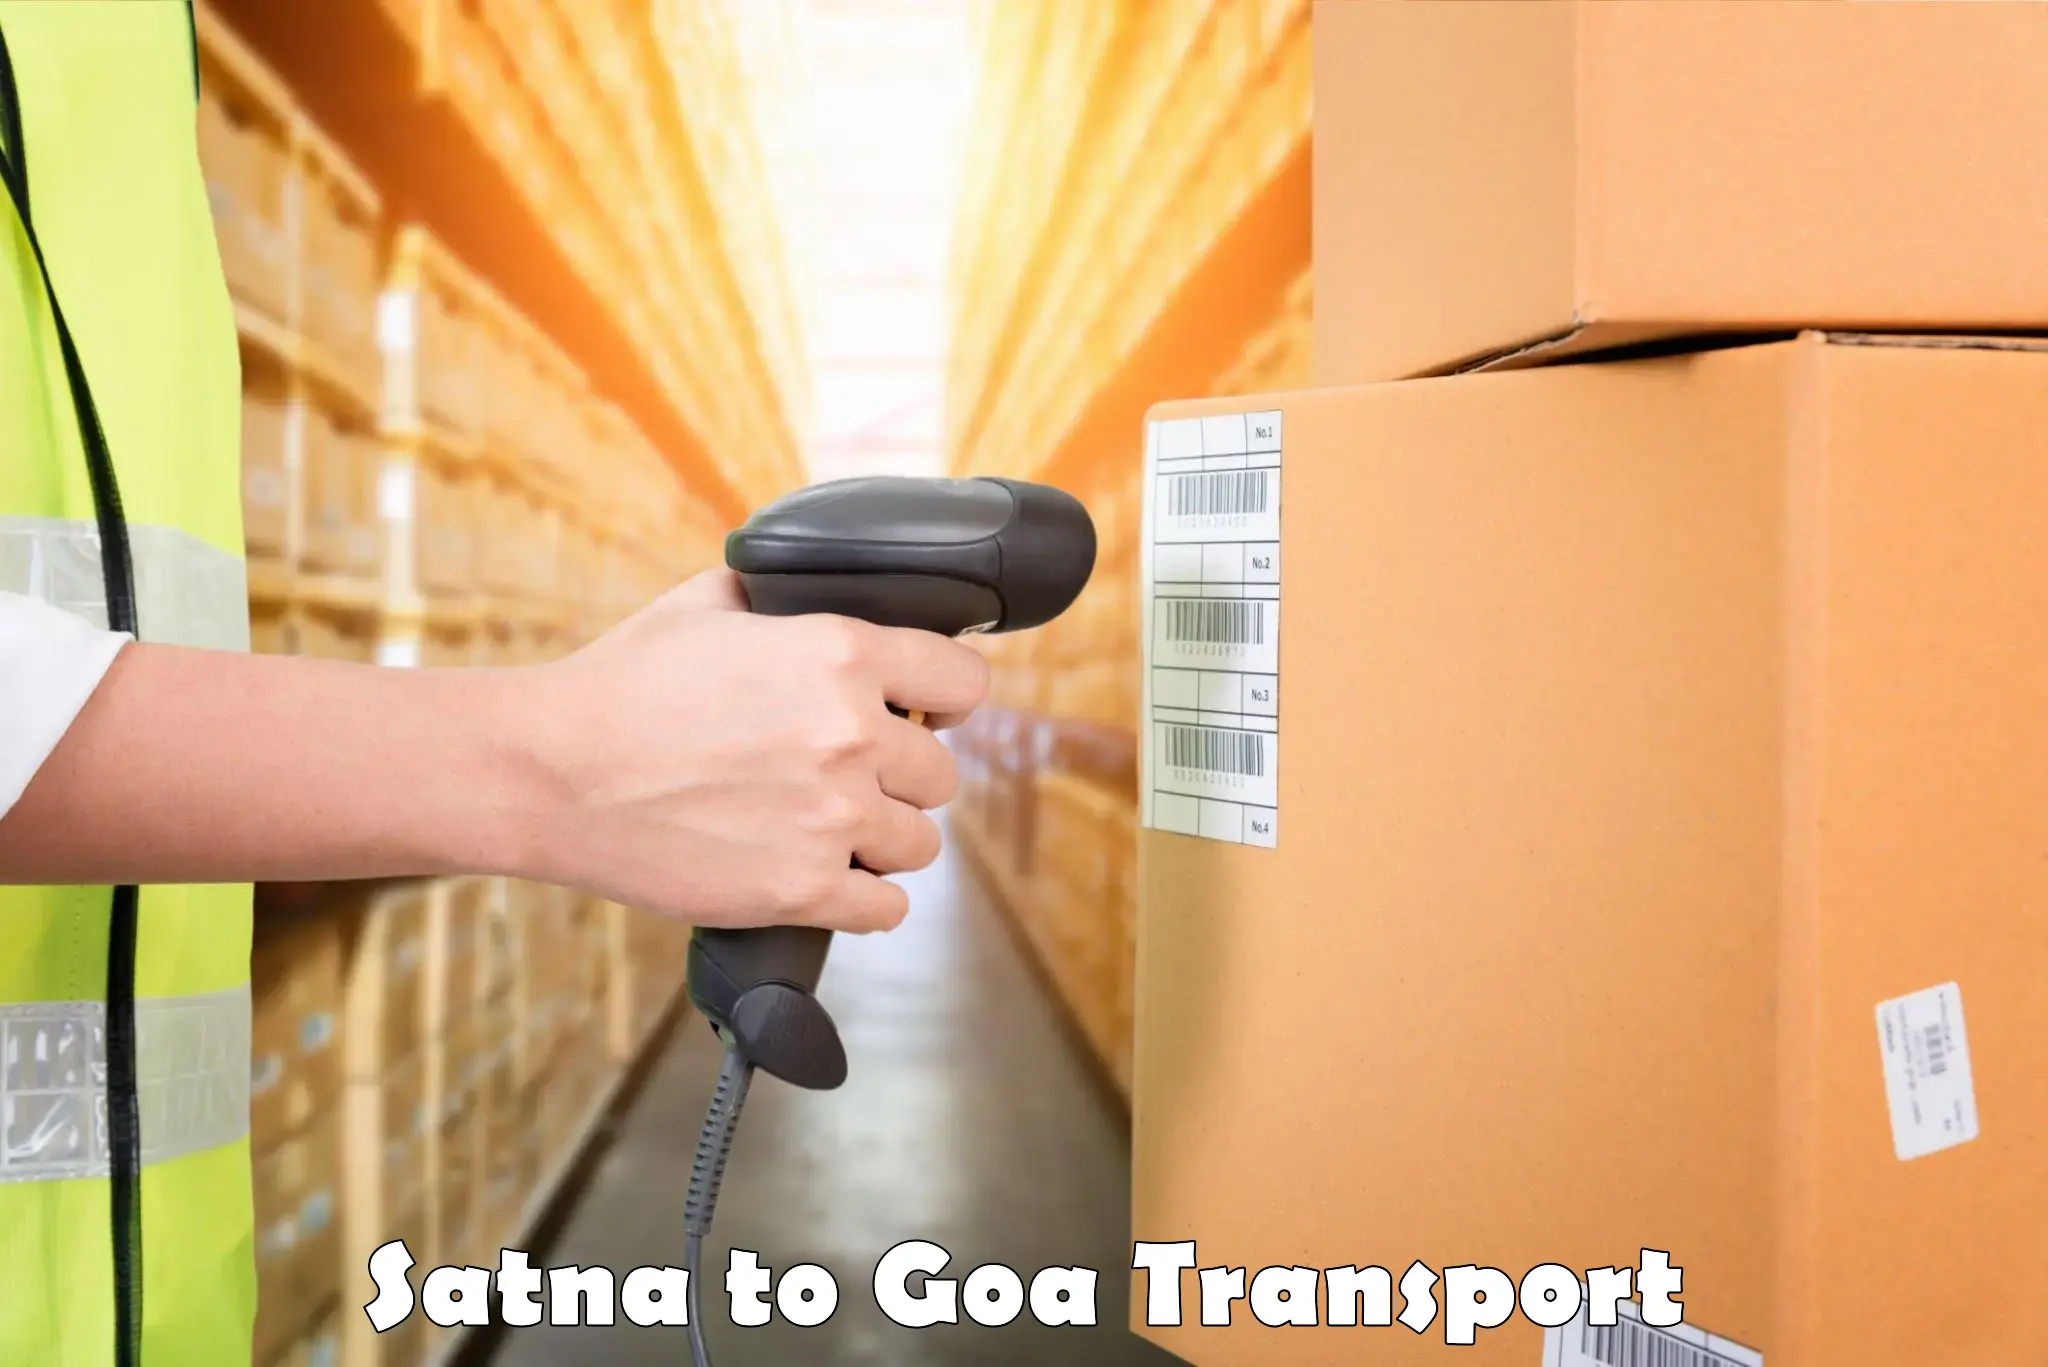 Pick up transport service Satna to NIT Goa